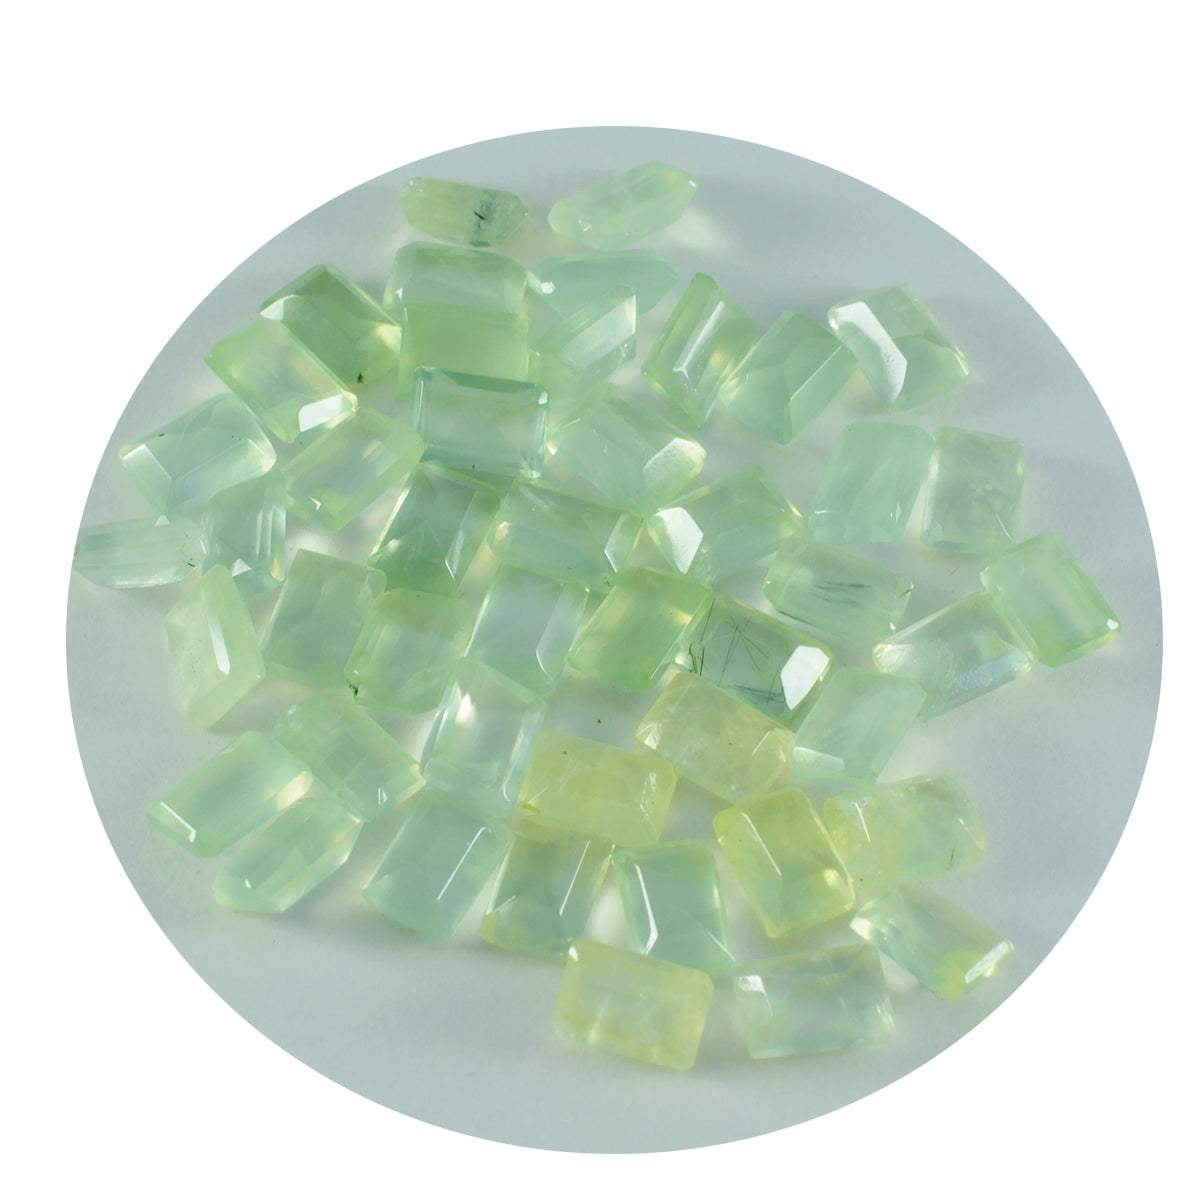 riyogems 1шт зеленый пренит ограненный 3х5 мм восьмиугольный камень отличное качество